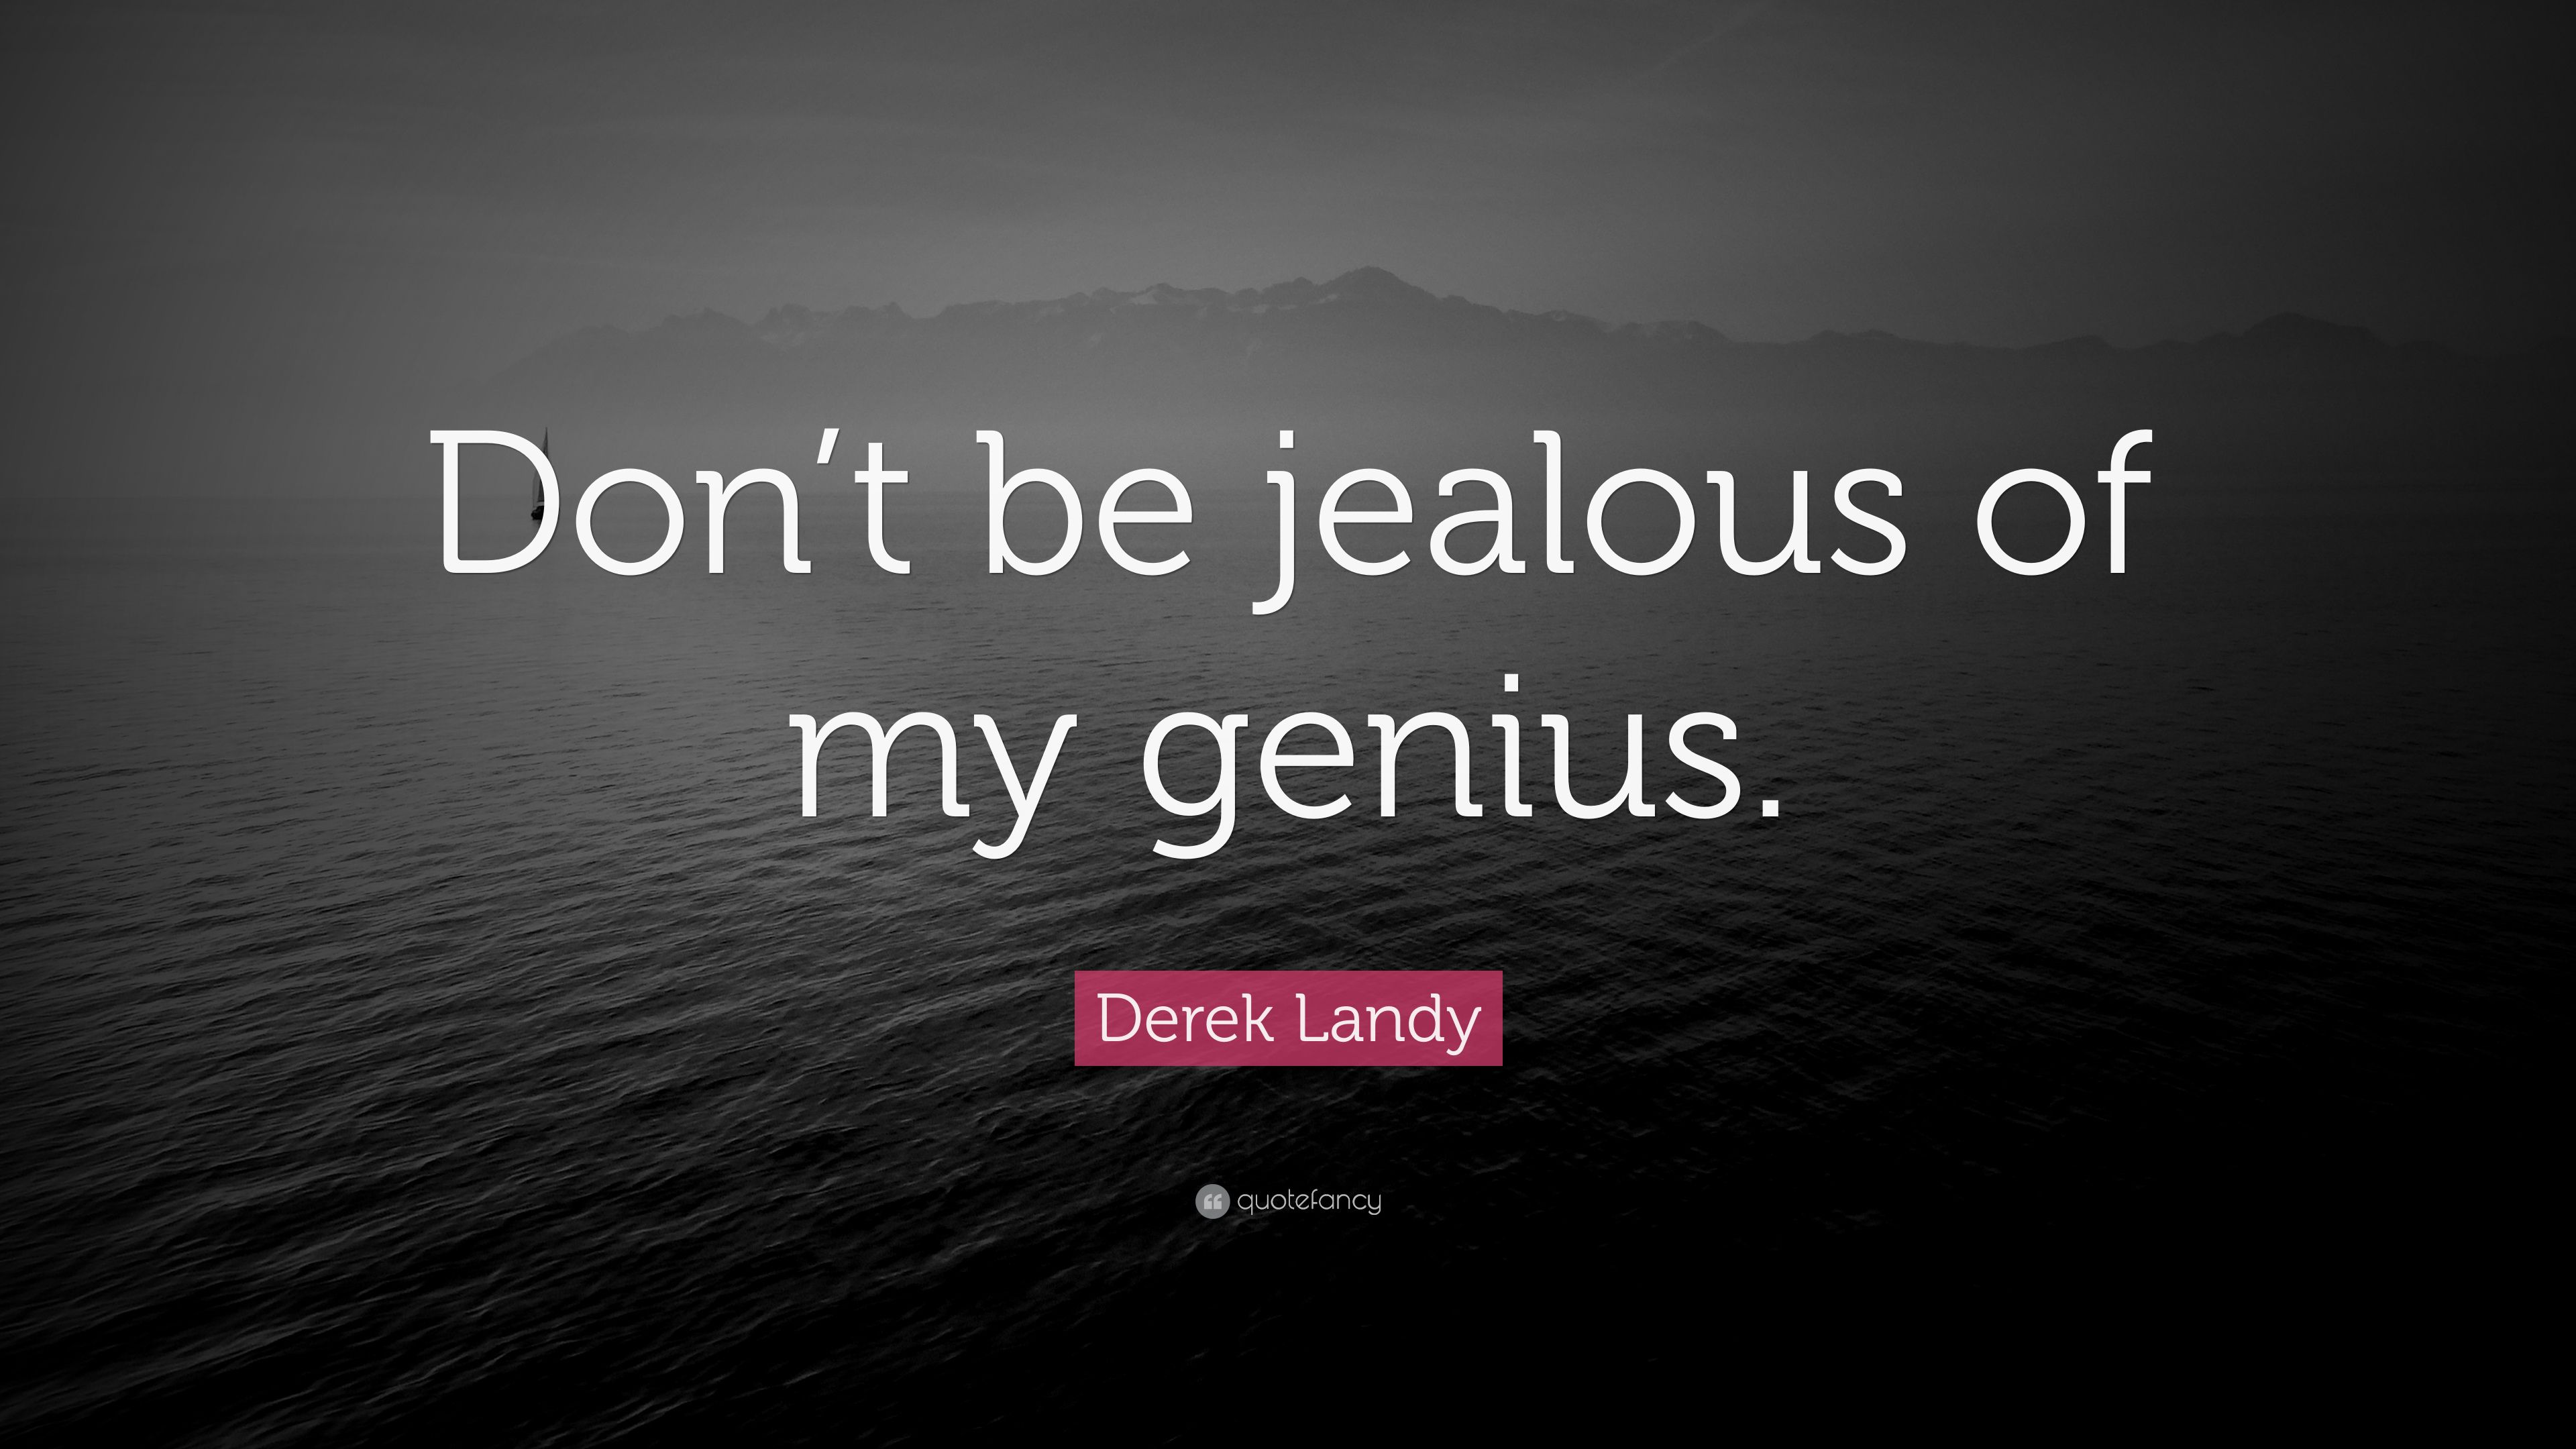 Derek Landy Quote: “Don't be jealous of my genius.” 9 wallpaper